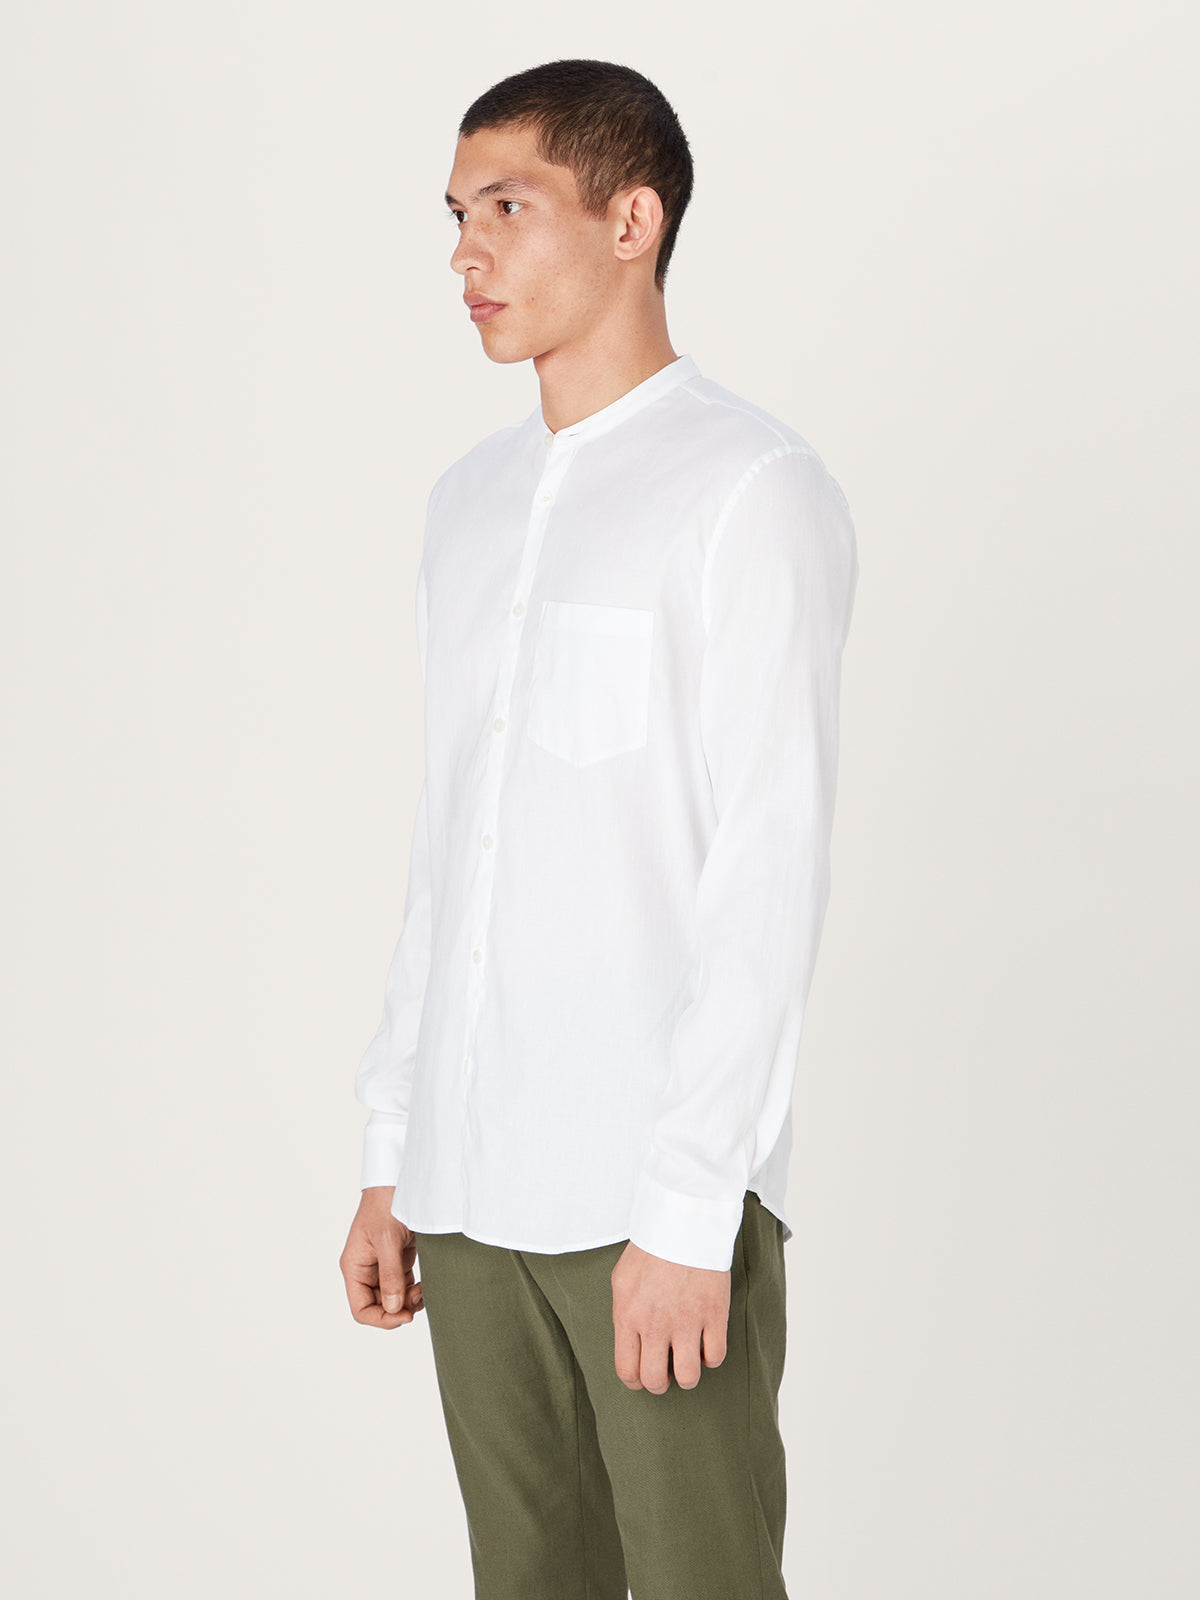 The All Day Shirt Linen Collarless || White | Linen